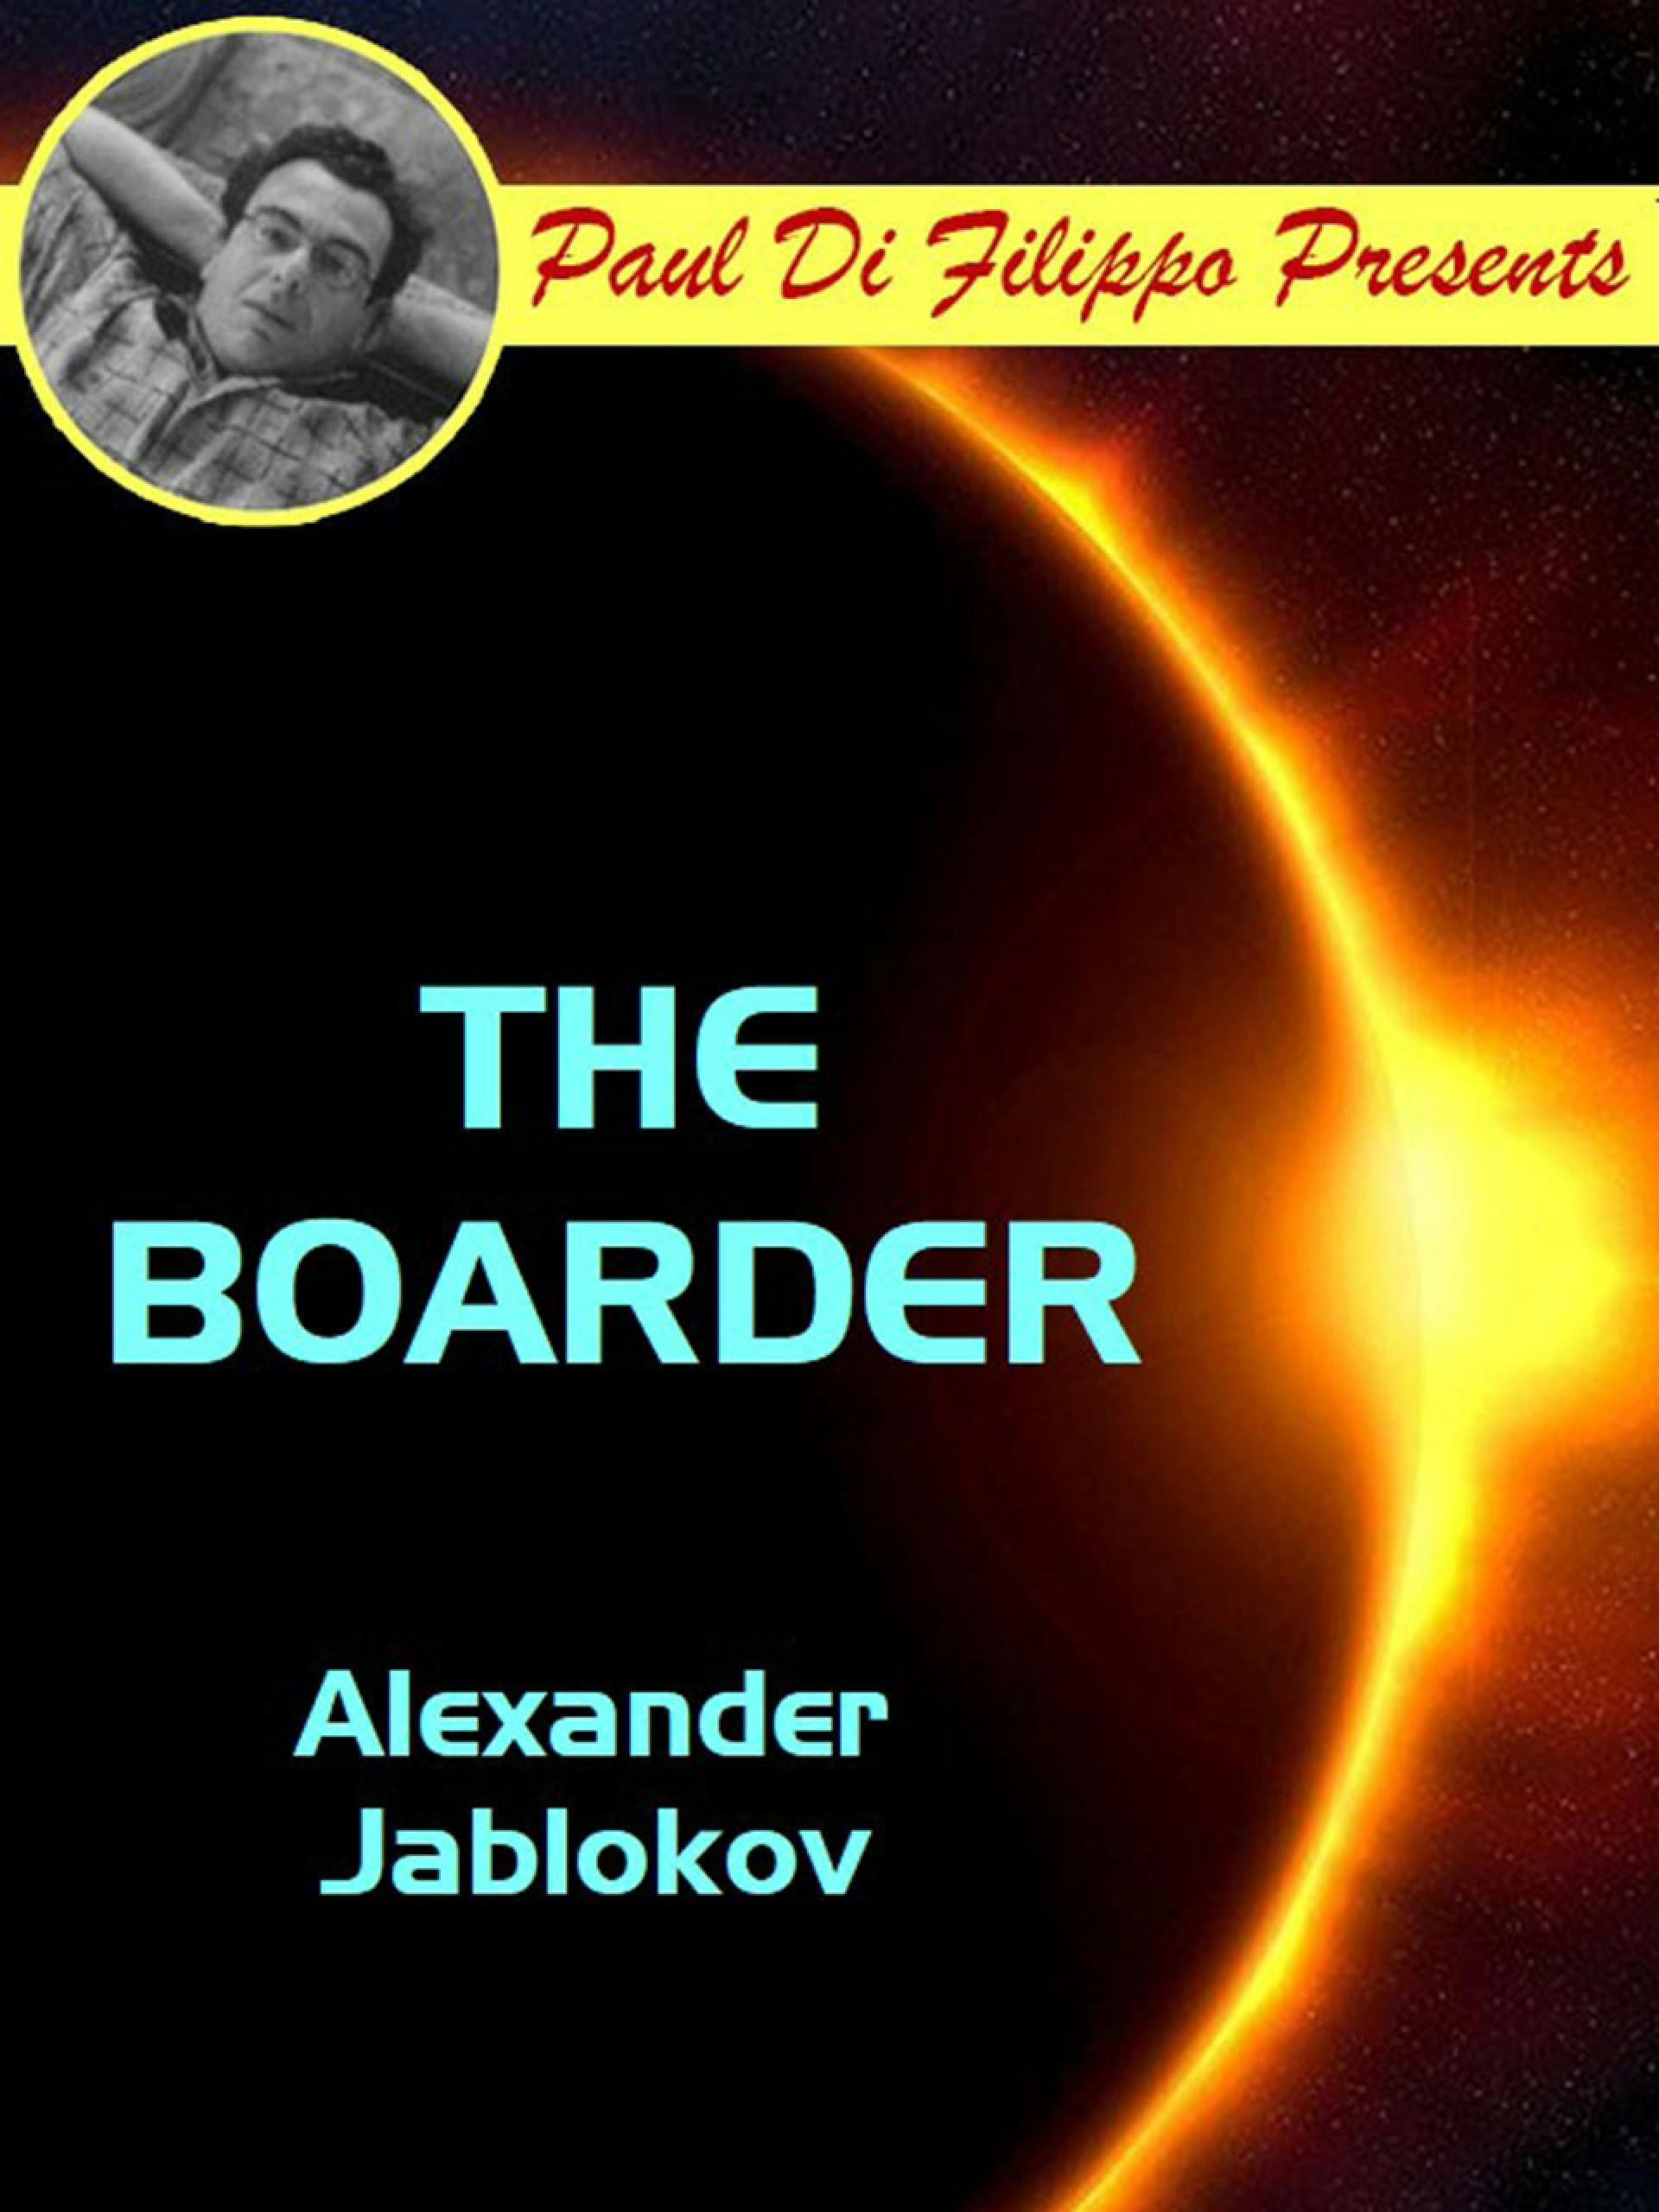 The Boarder - Alexander Jablokov